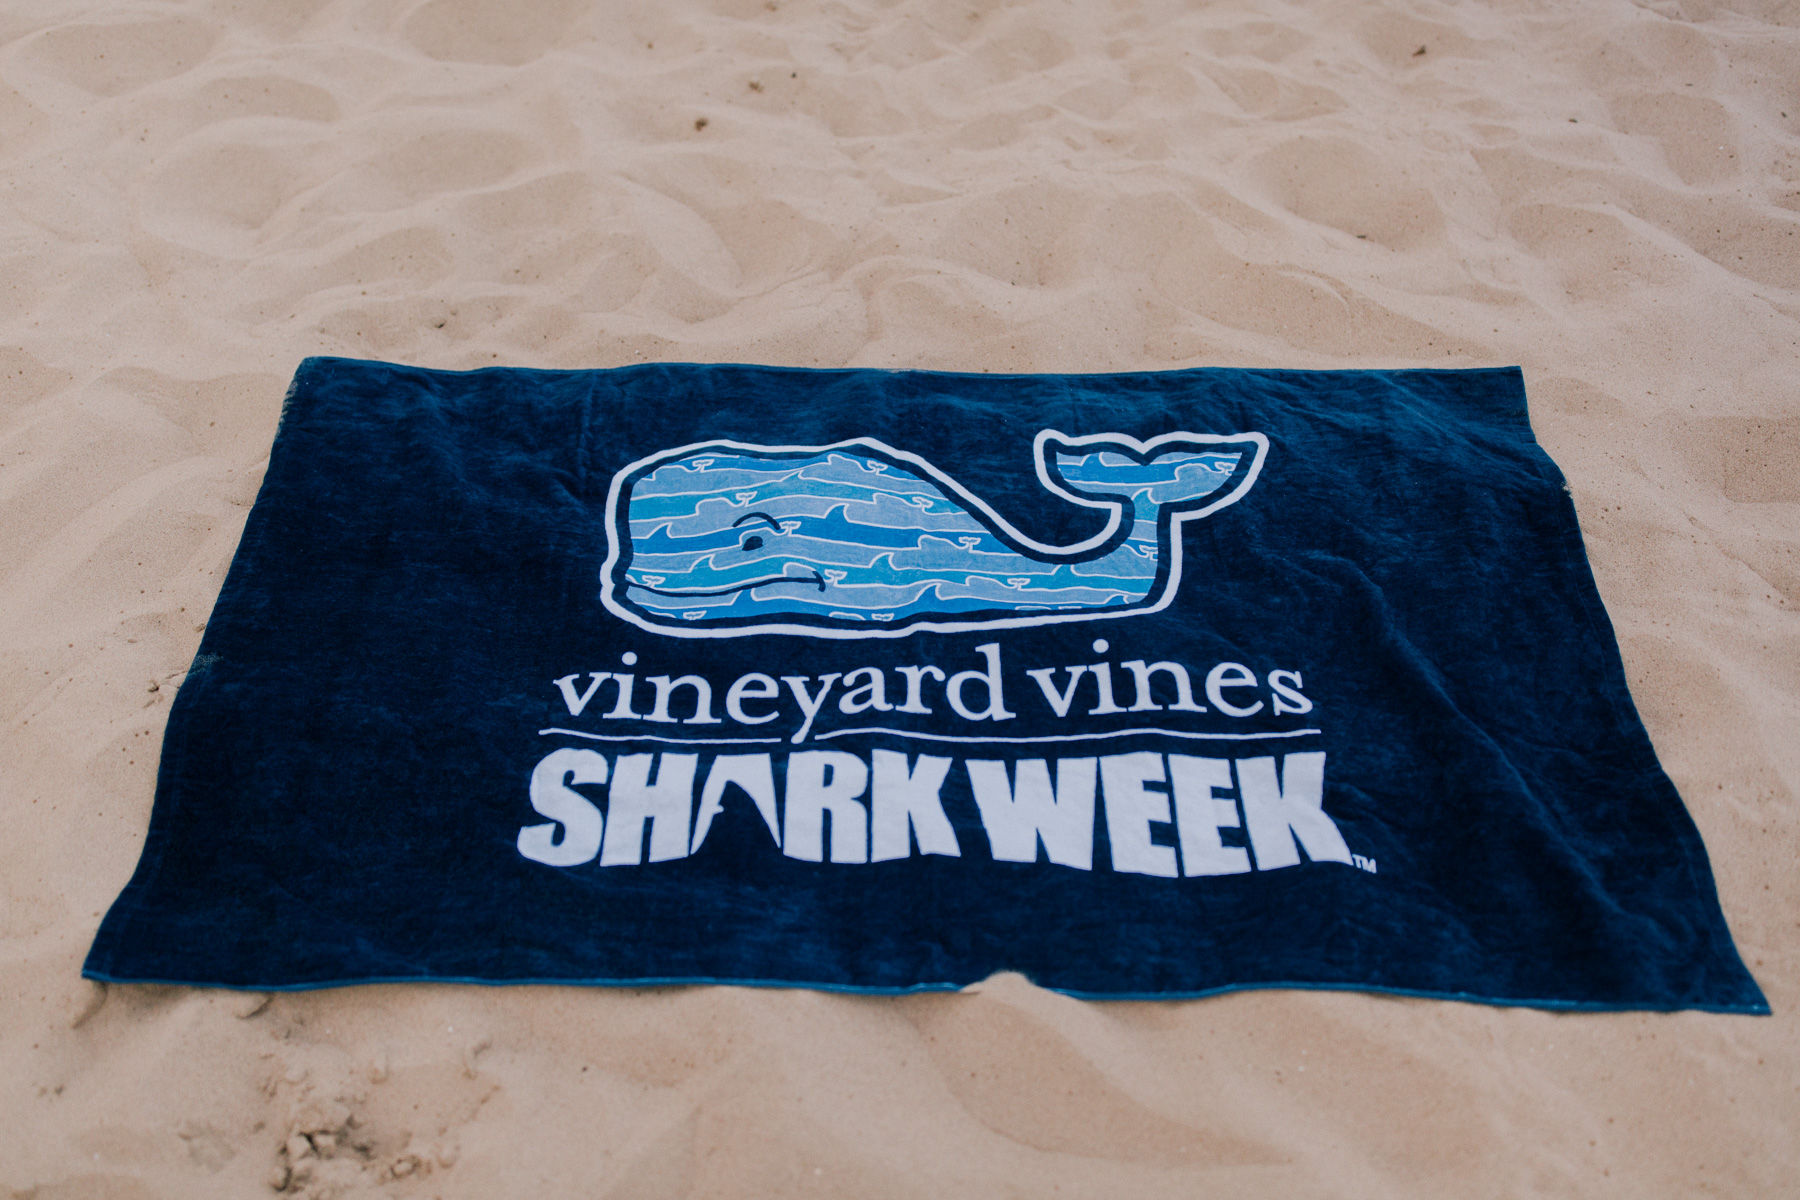 Vineyard Vines - Shark Week